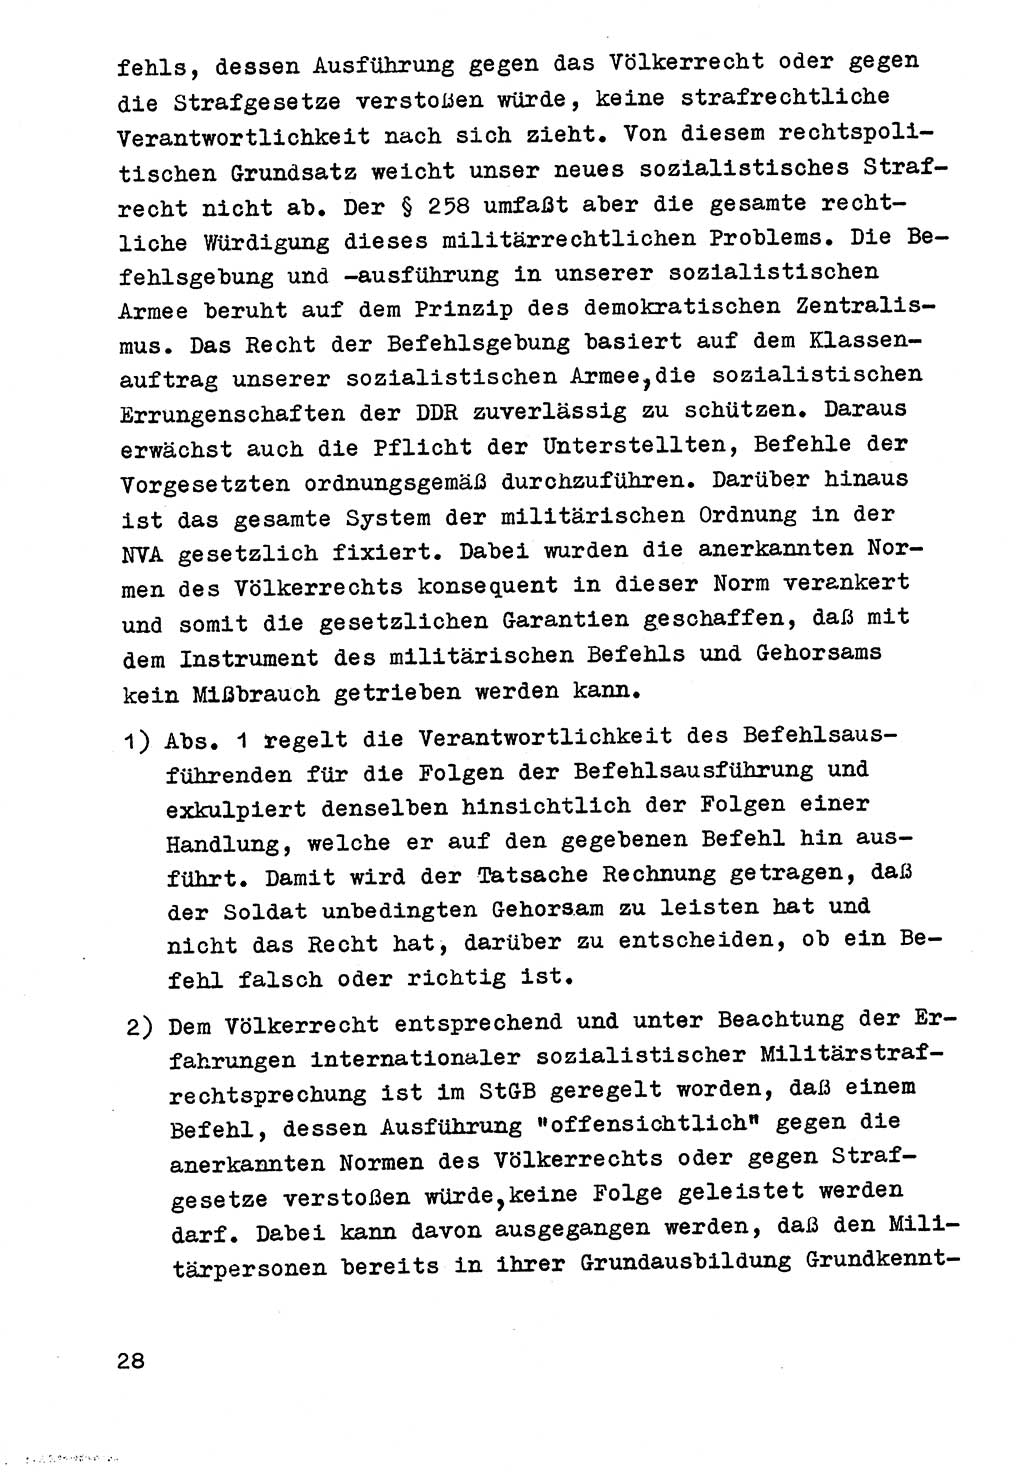 Strafrecht der DDR (Deutsche Demokratische Republik), Besonderer Teil, Lehrmaterial, Heft 9 1969, Seite 28 (Strafr. DDR BT Lehrmat. H. 9 1969, S. 28)